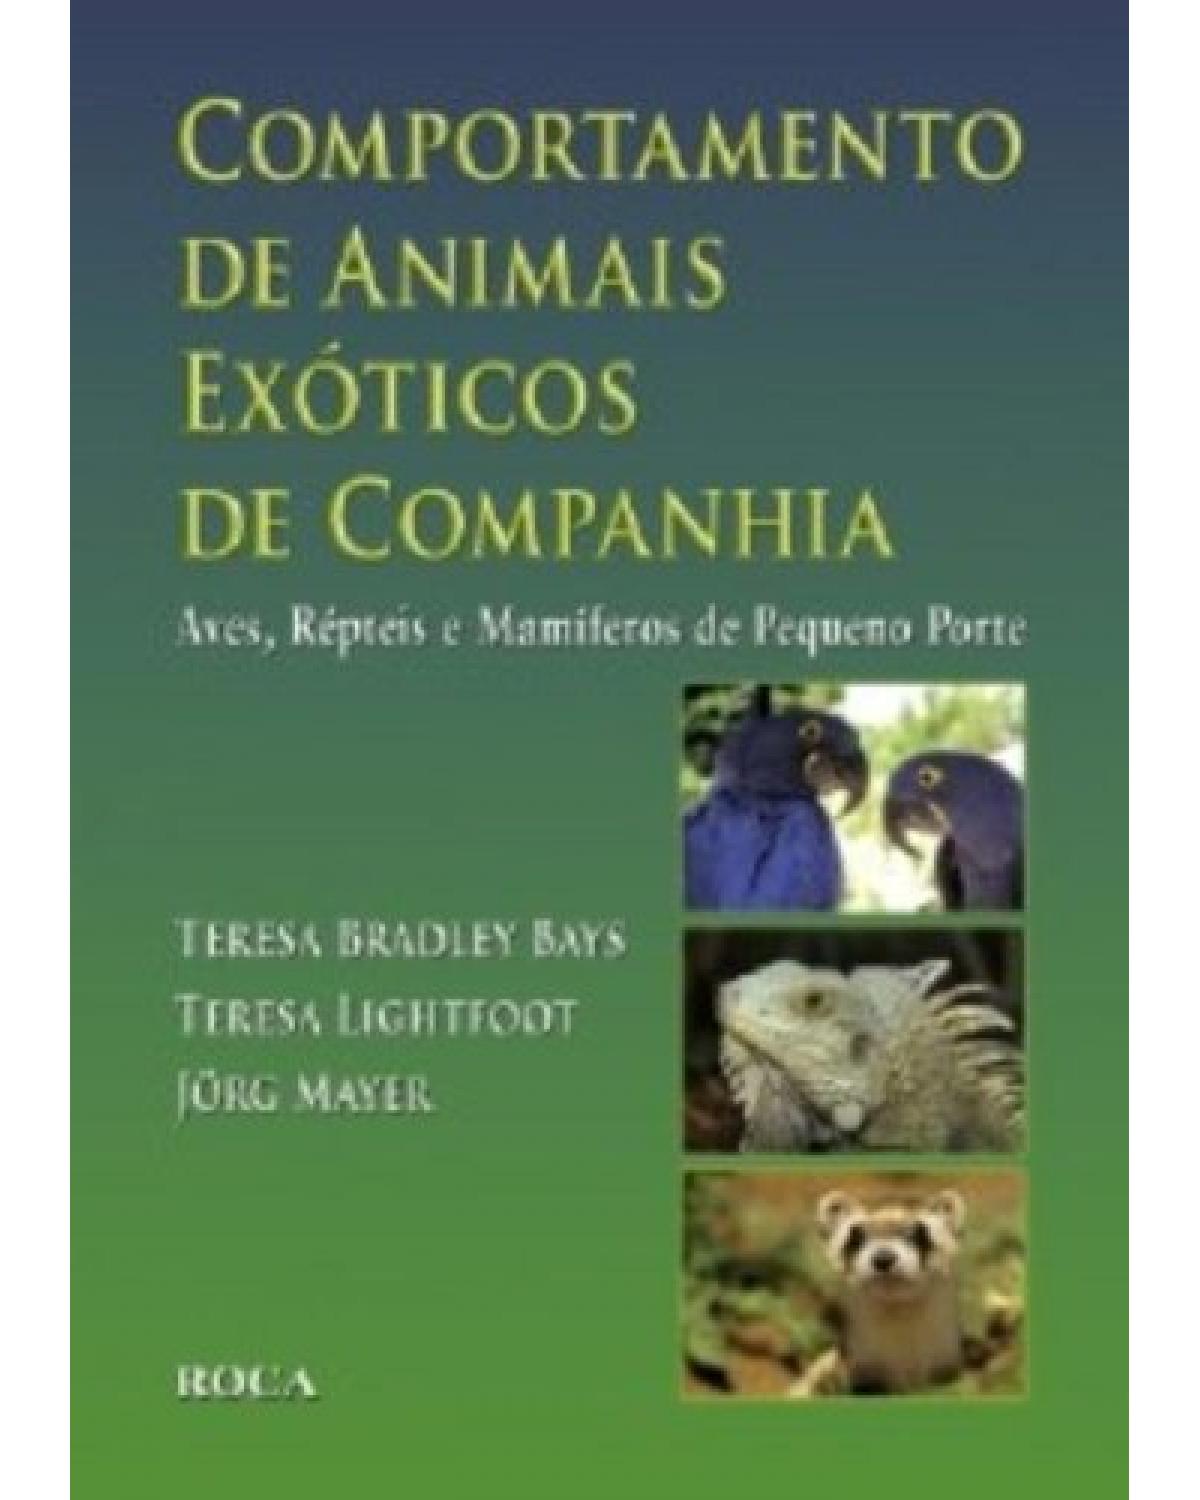 Comportamento de animais exóticos de companhia - Aves, répteis e mamíferos de pequeno porte - 1ª Edição | 2009